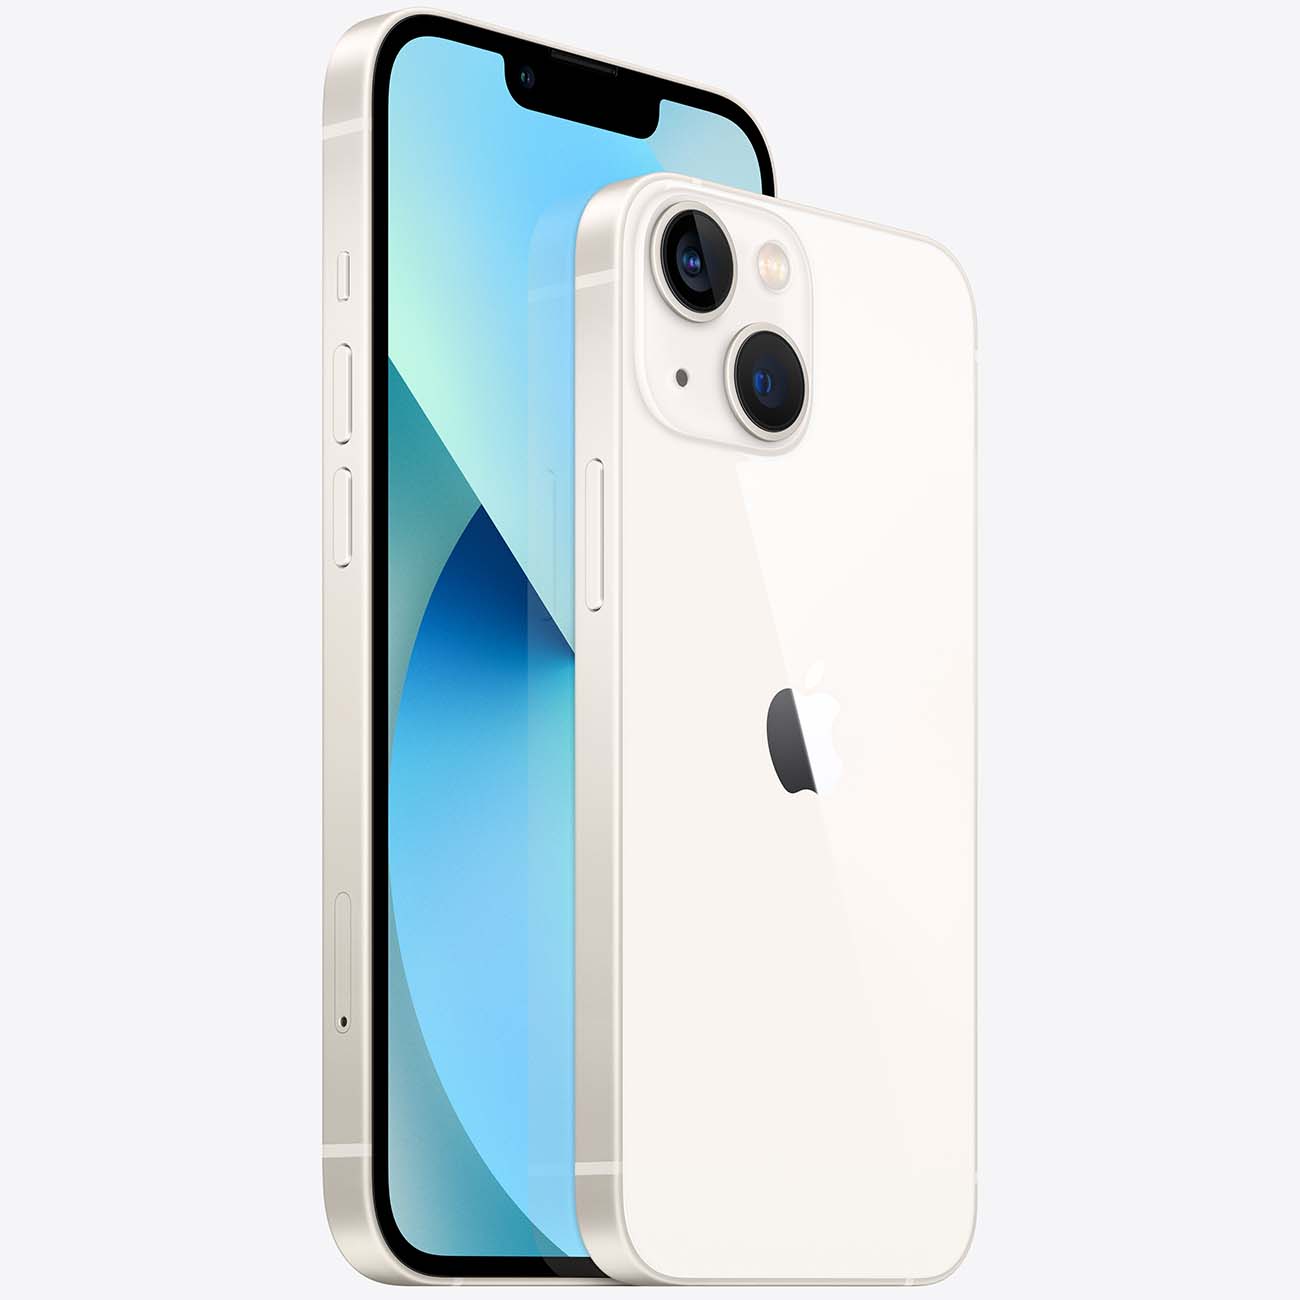 Купить смартфон apple iphone 13 512gb starlight Apple iPhone 13 в официальном магазине Apple, Samsung, Xiaomi. iPixel.ru Купить, заказ, кредит, рассрочка, отзывы,  характеристики, цена,  фотографии, в подарок.